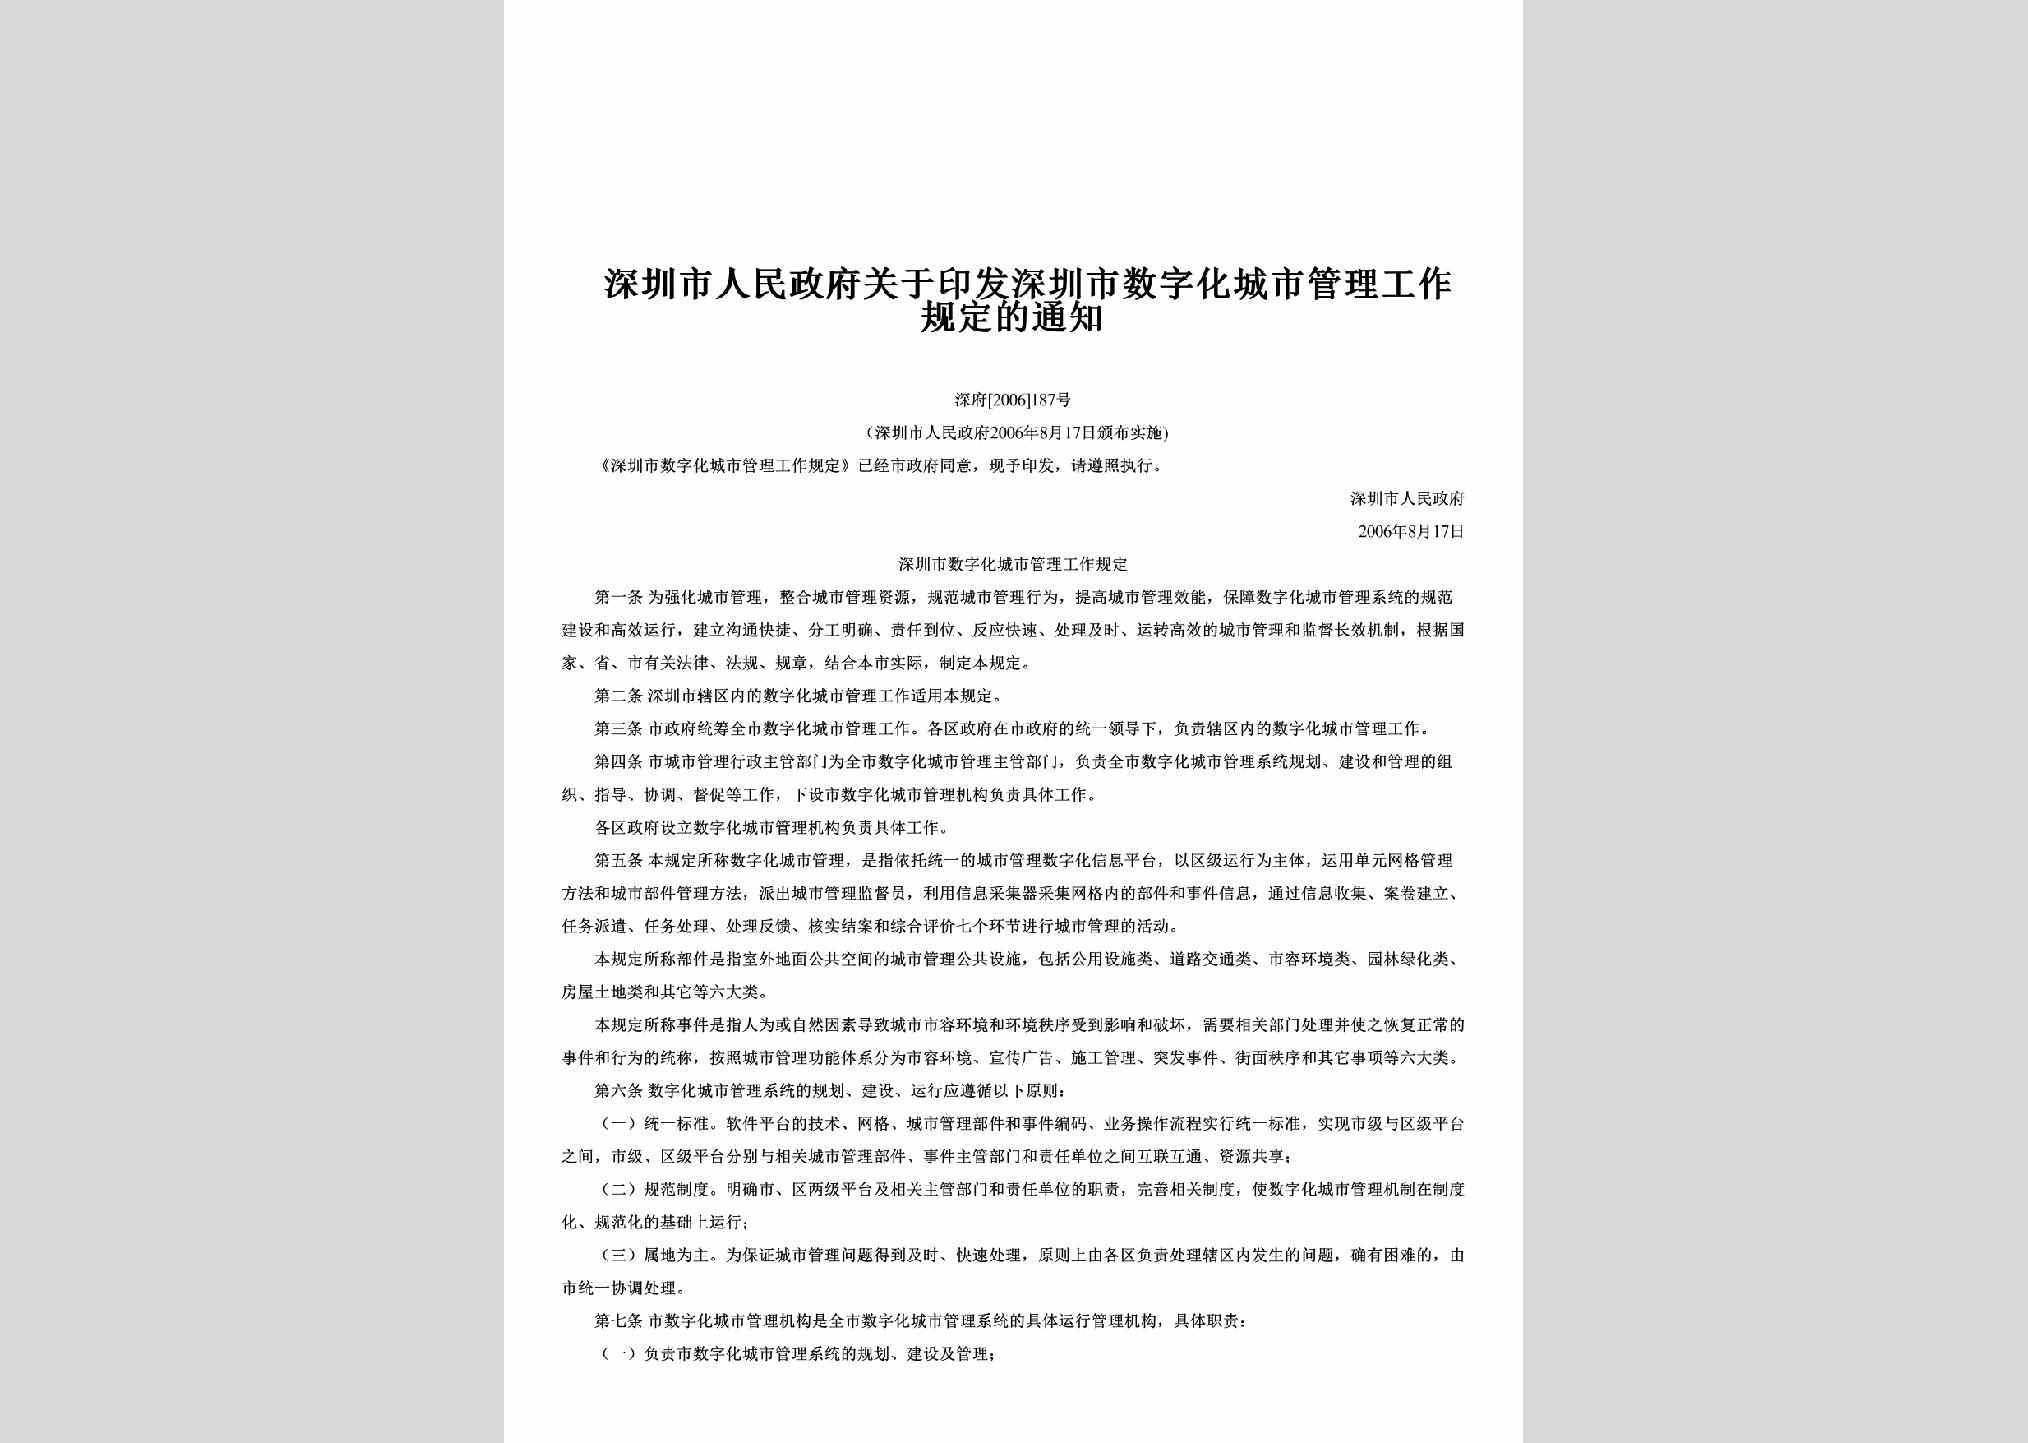 深府[2006]187号：关于印发深圳市数字化城市管理工作规定的通知